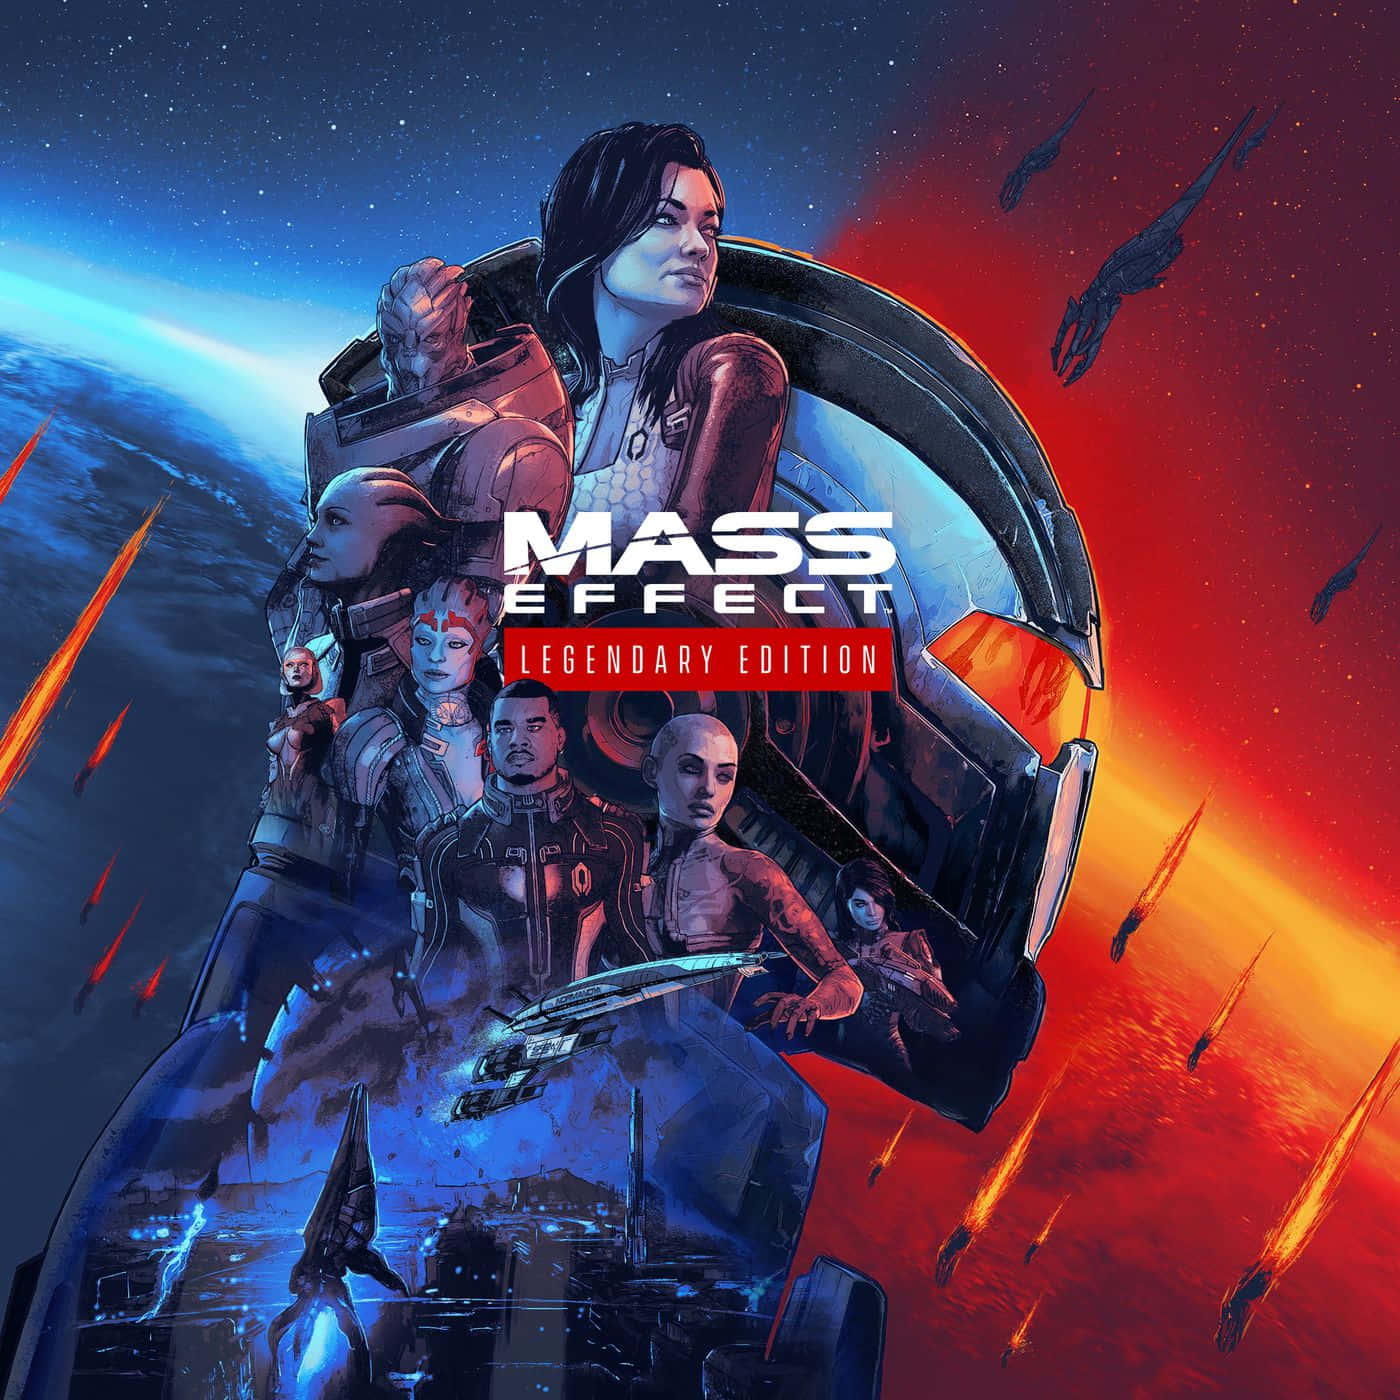 Elcomandante Shepard Mirando Una Ciudad Futurista En El Espacio En Mass Effect.